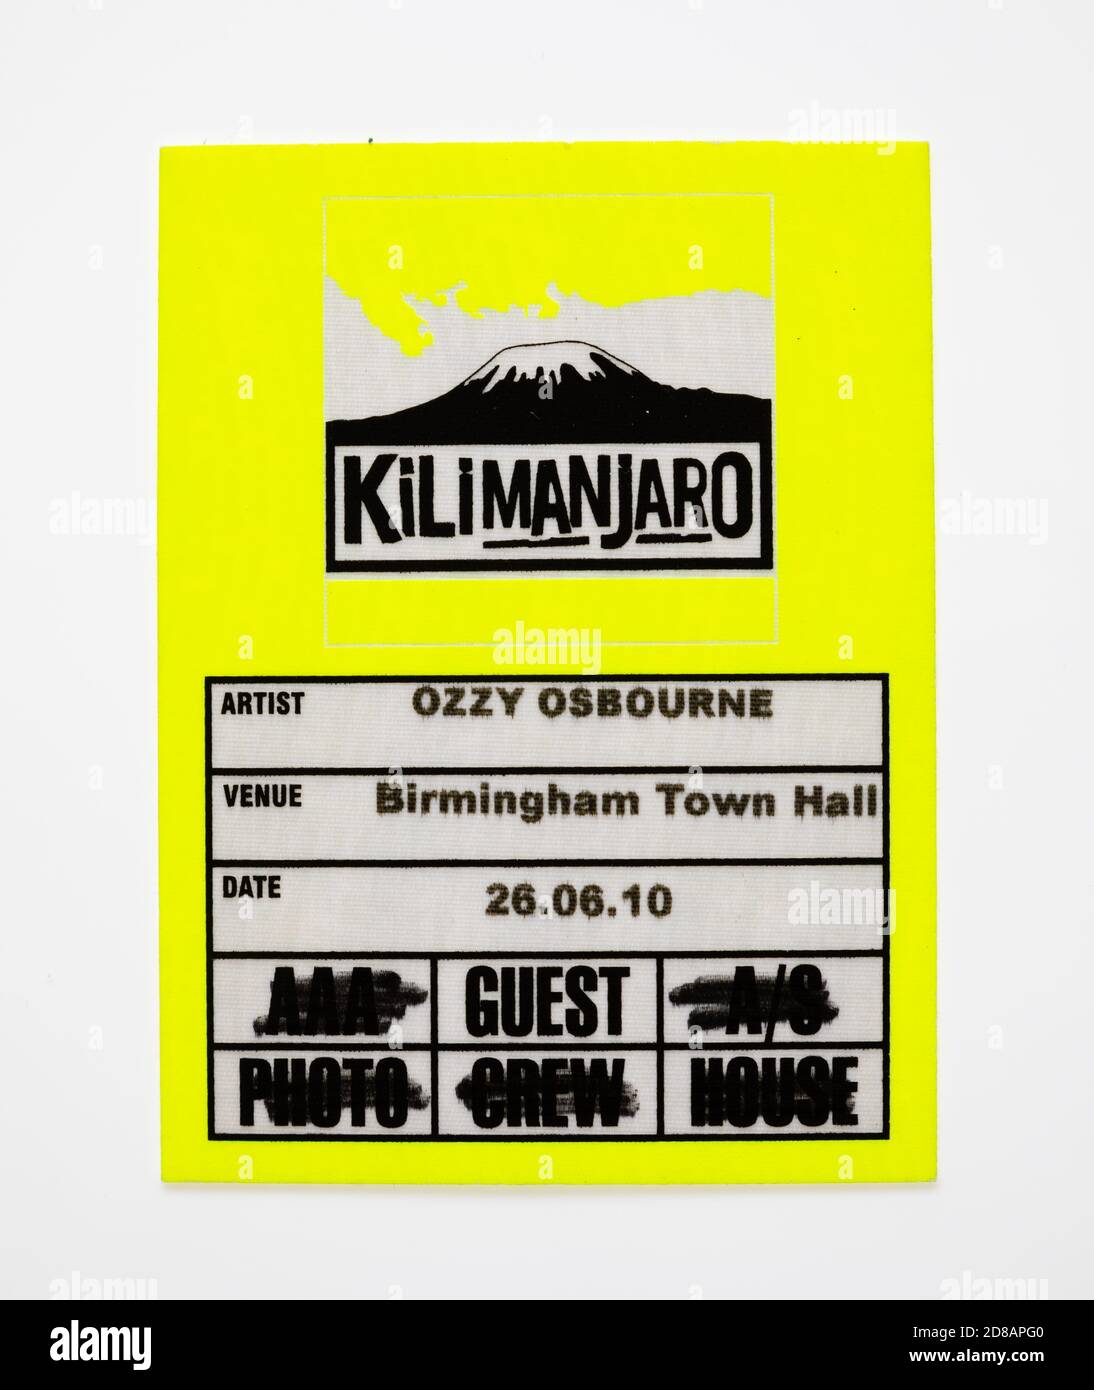 Ticket, Gästekarte für einen Ozzy Osbourne Gig im Birmingham Town Hall, England. Juni 2010. * Dies ist ein Stock-Foto.. Kein Ticket * Stockfoto